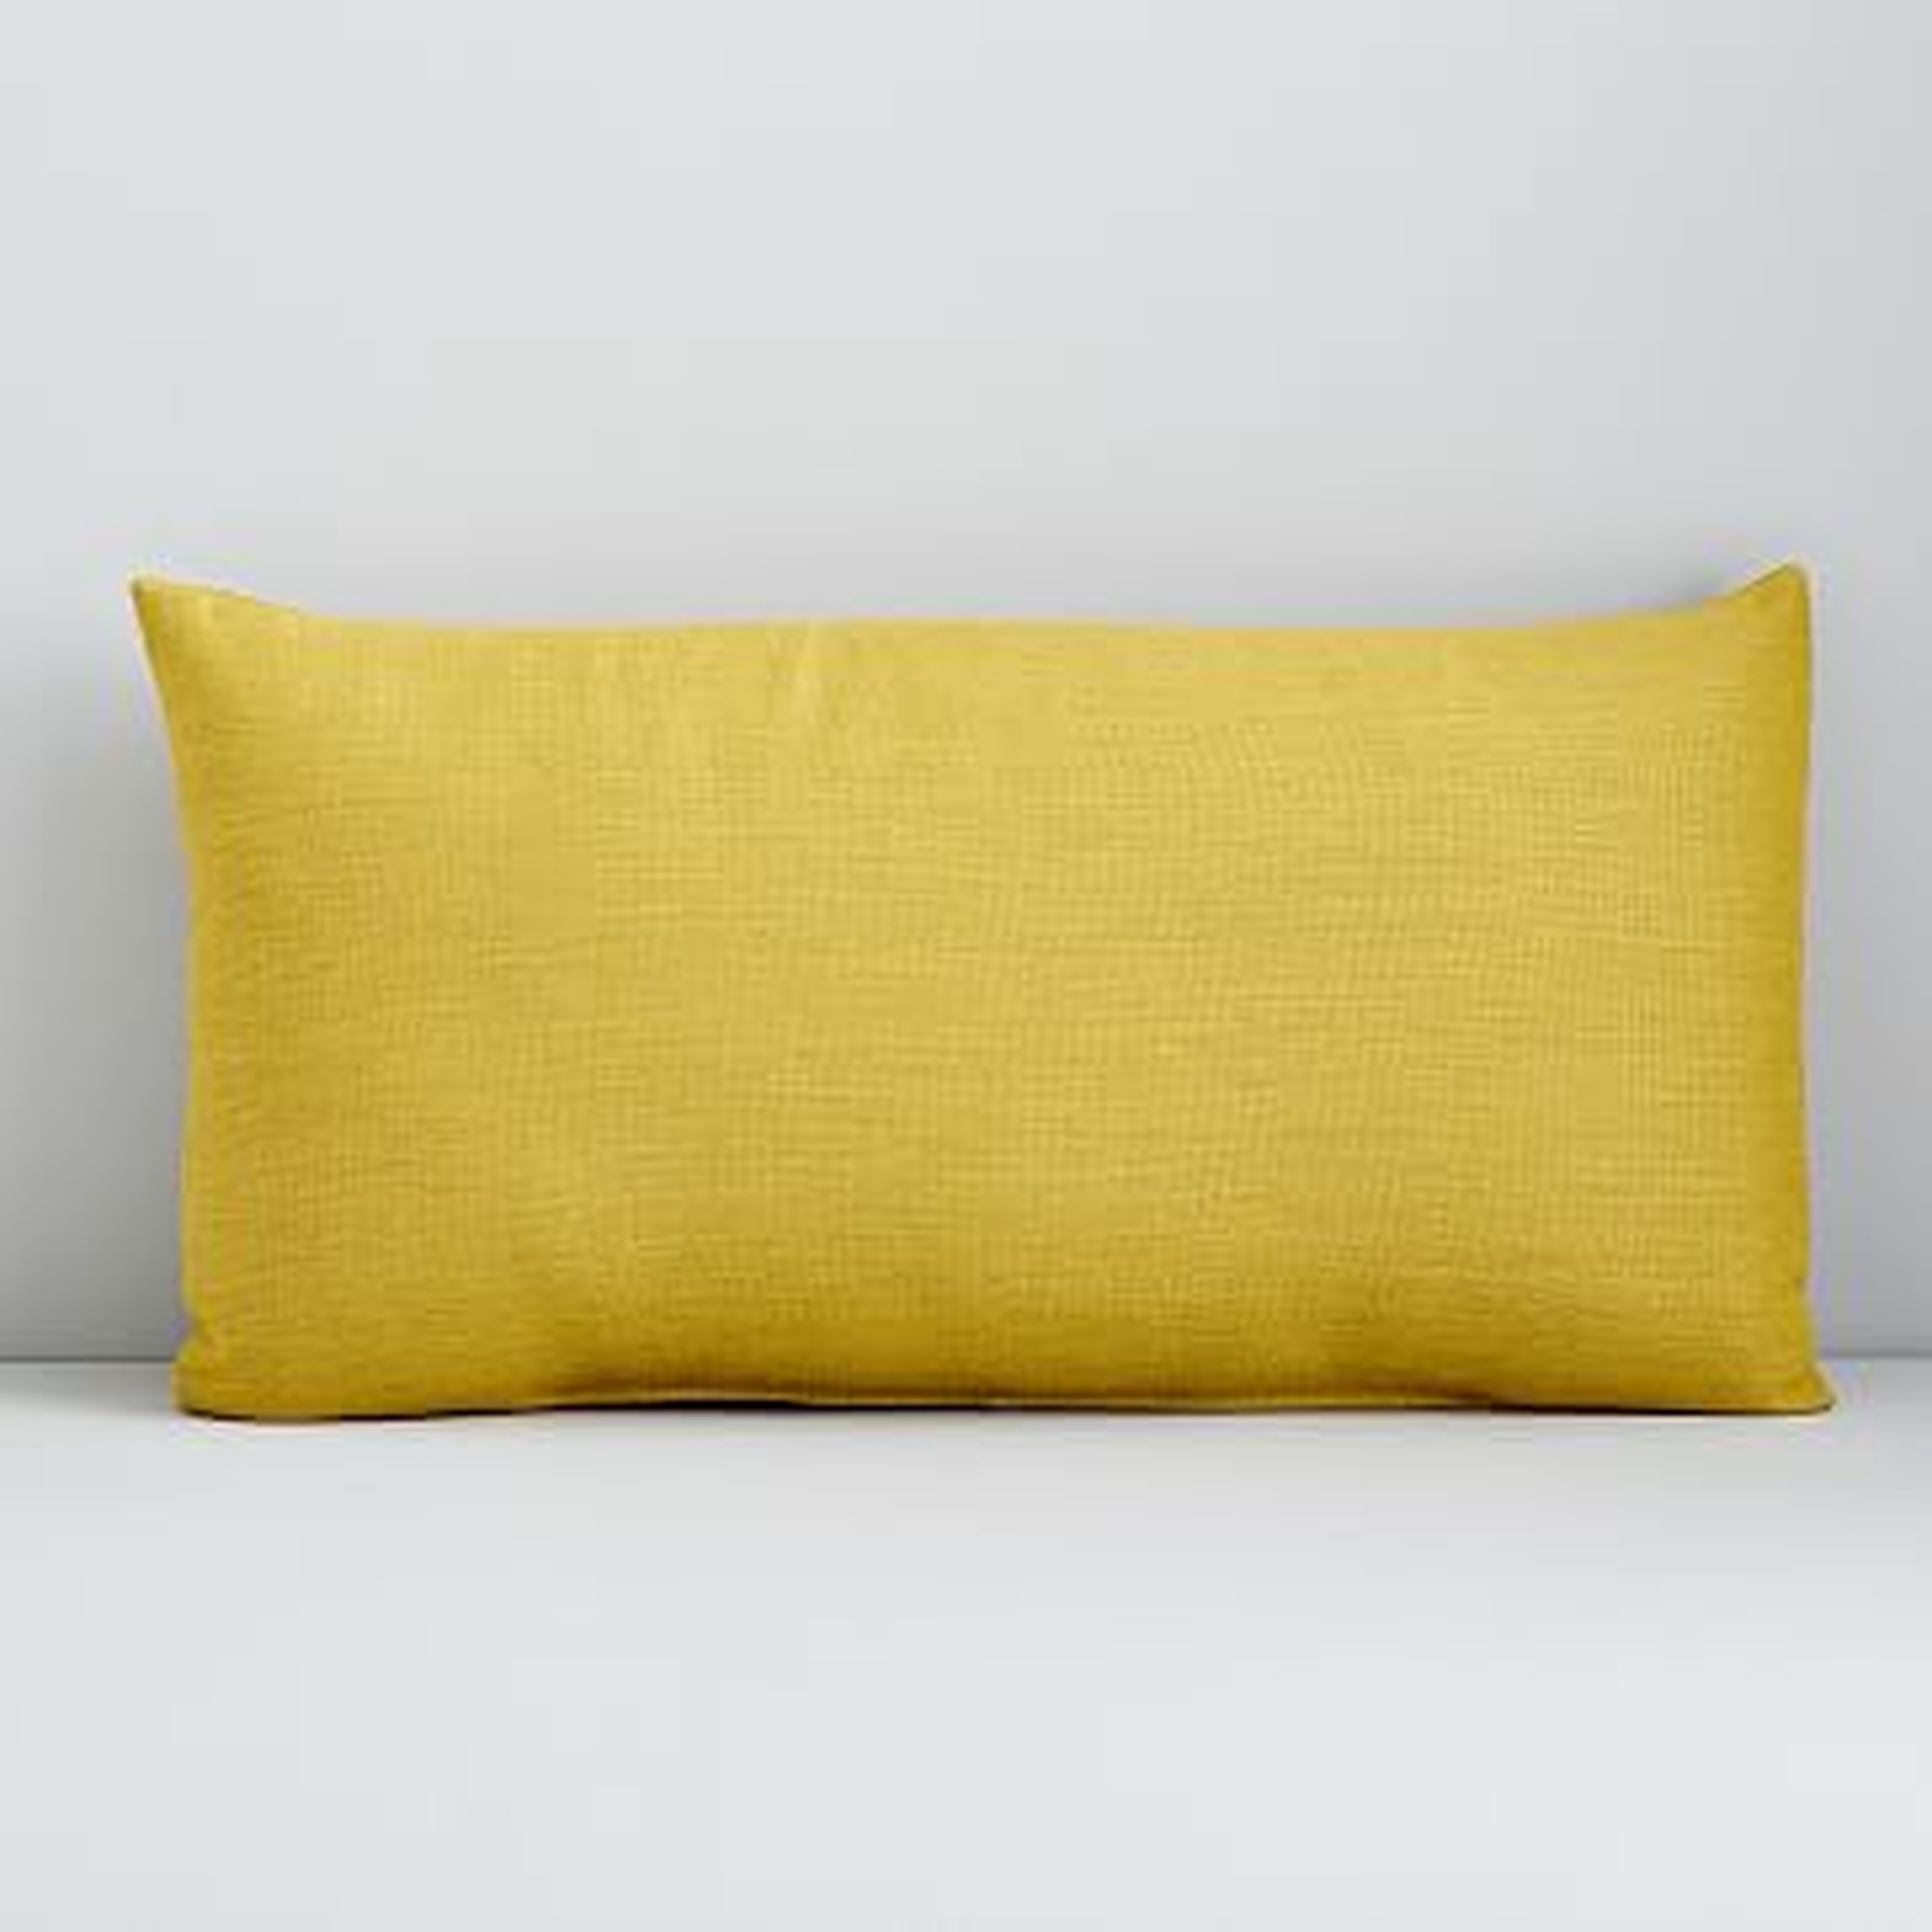 Sunbrella Indoor/Outdoor Cast Pillow, 12"x21", Citrus - West Elm